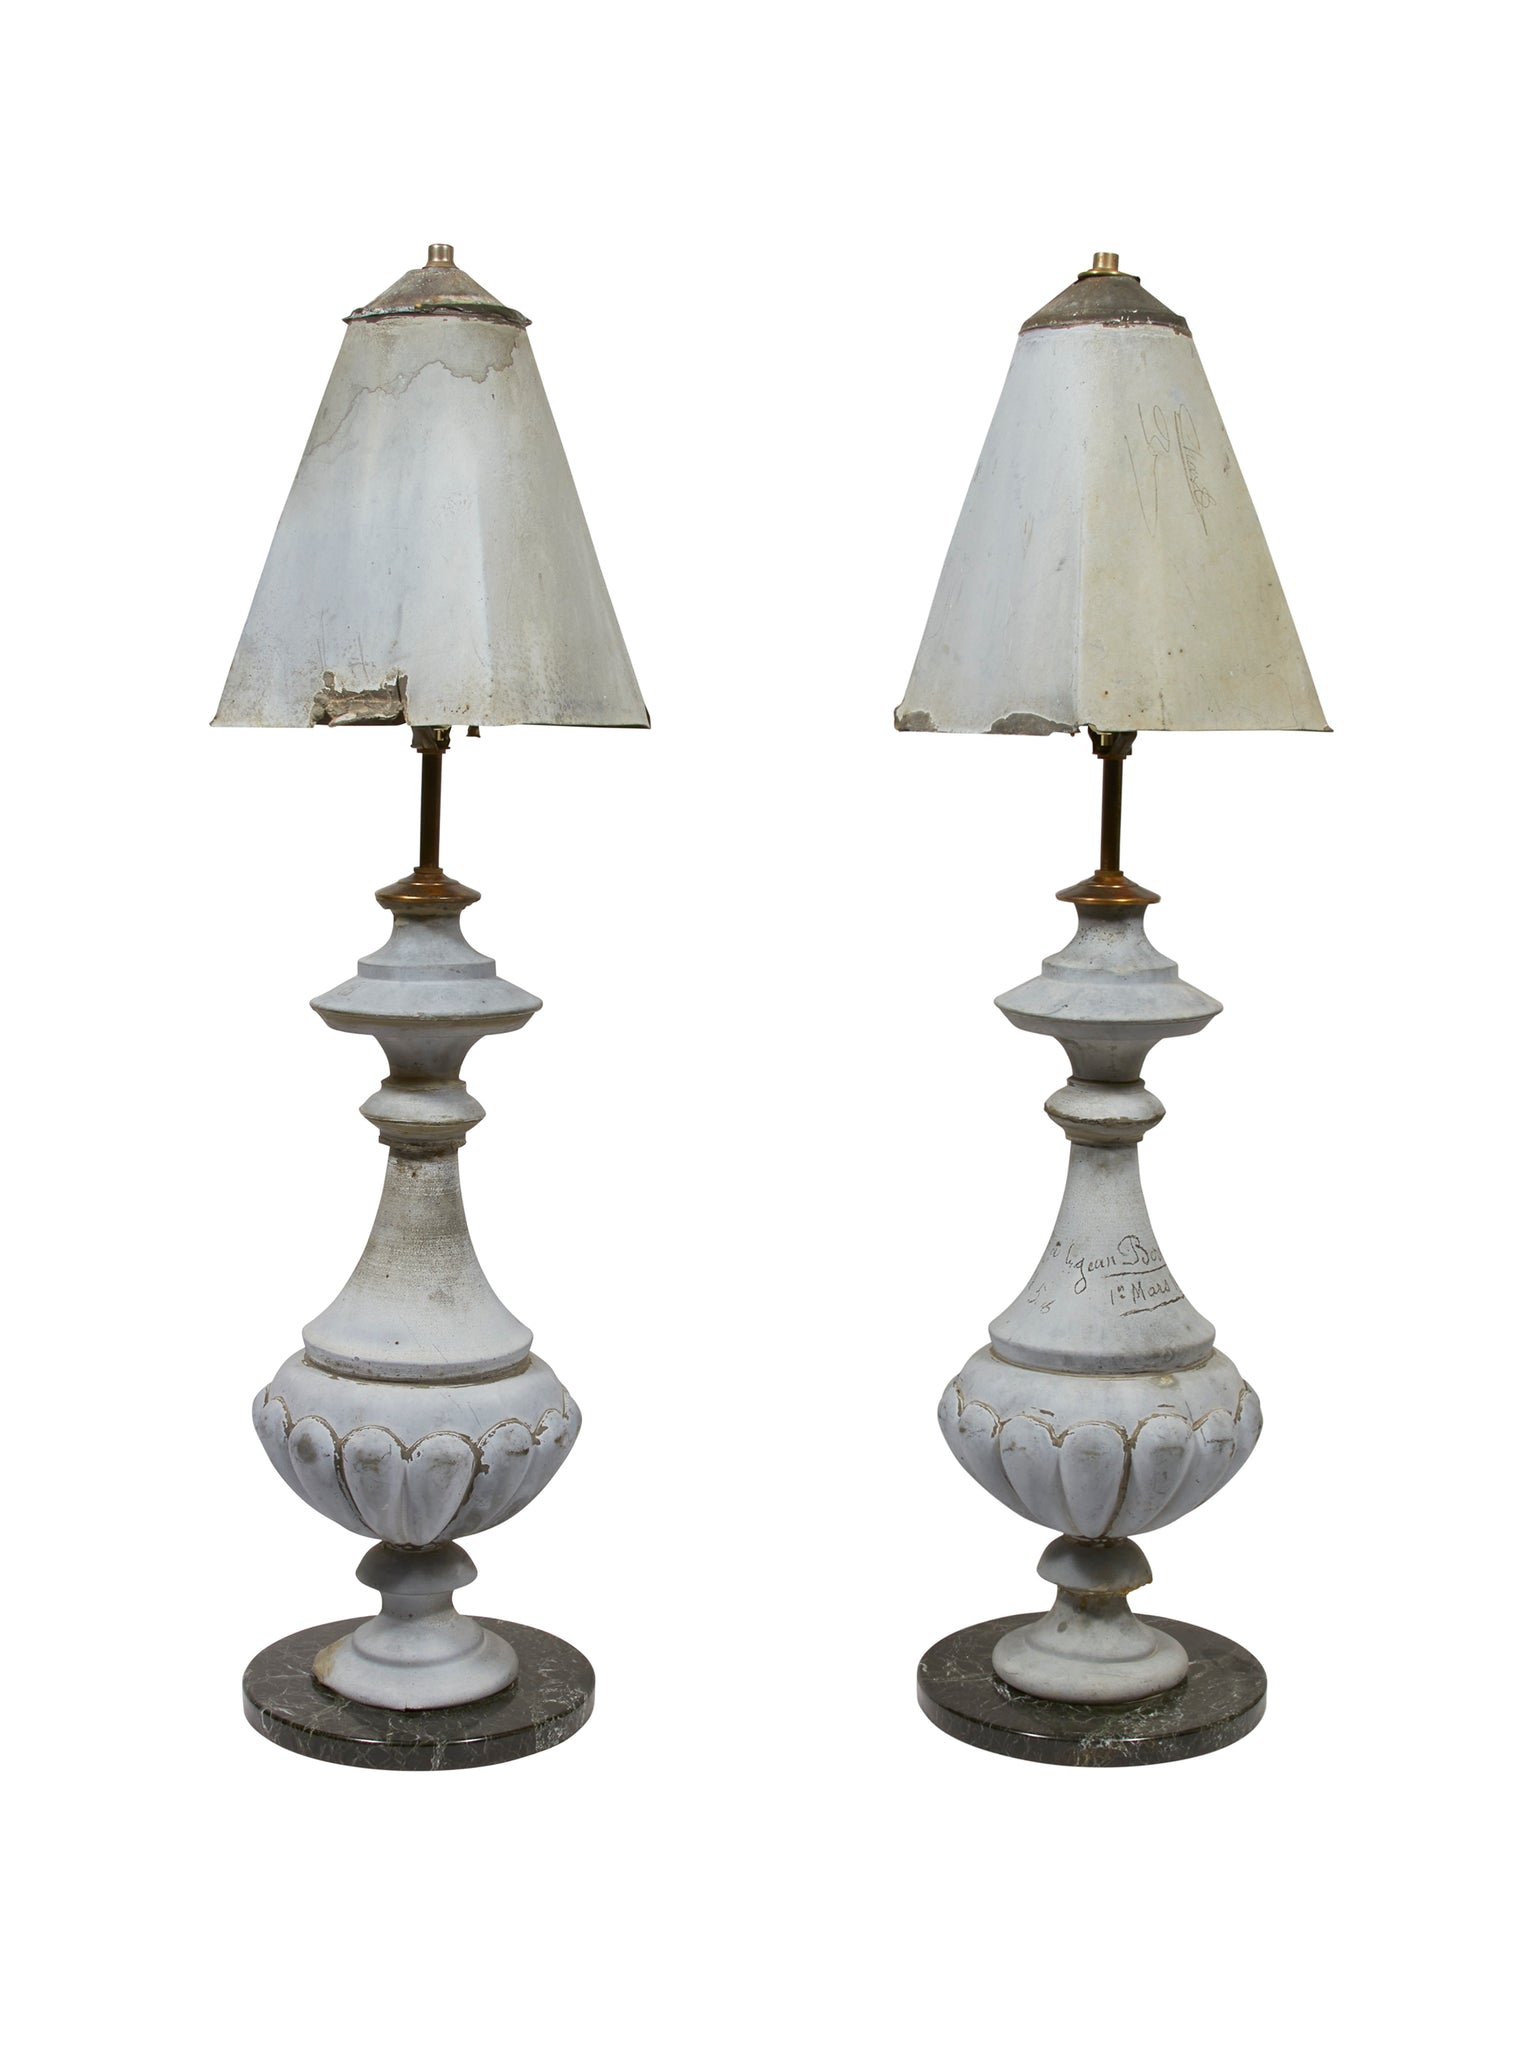 Vintage 1856 Parisian Architecture Lamp Pair Weston Table